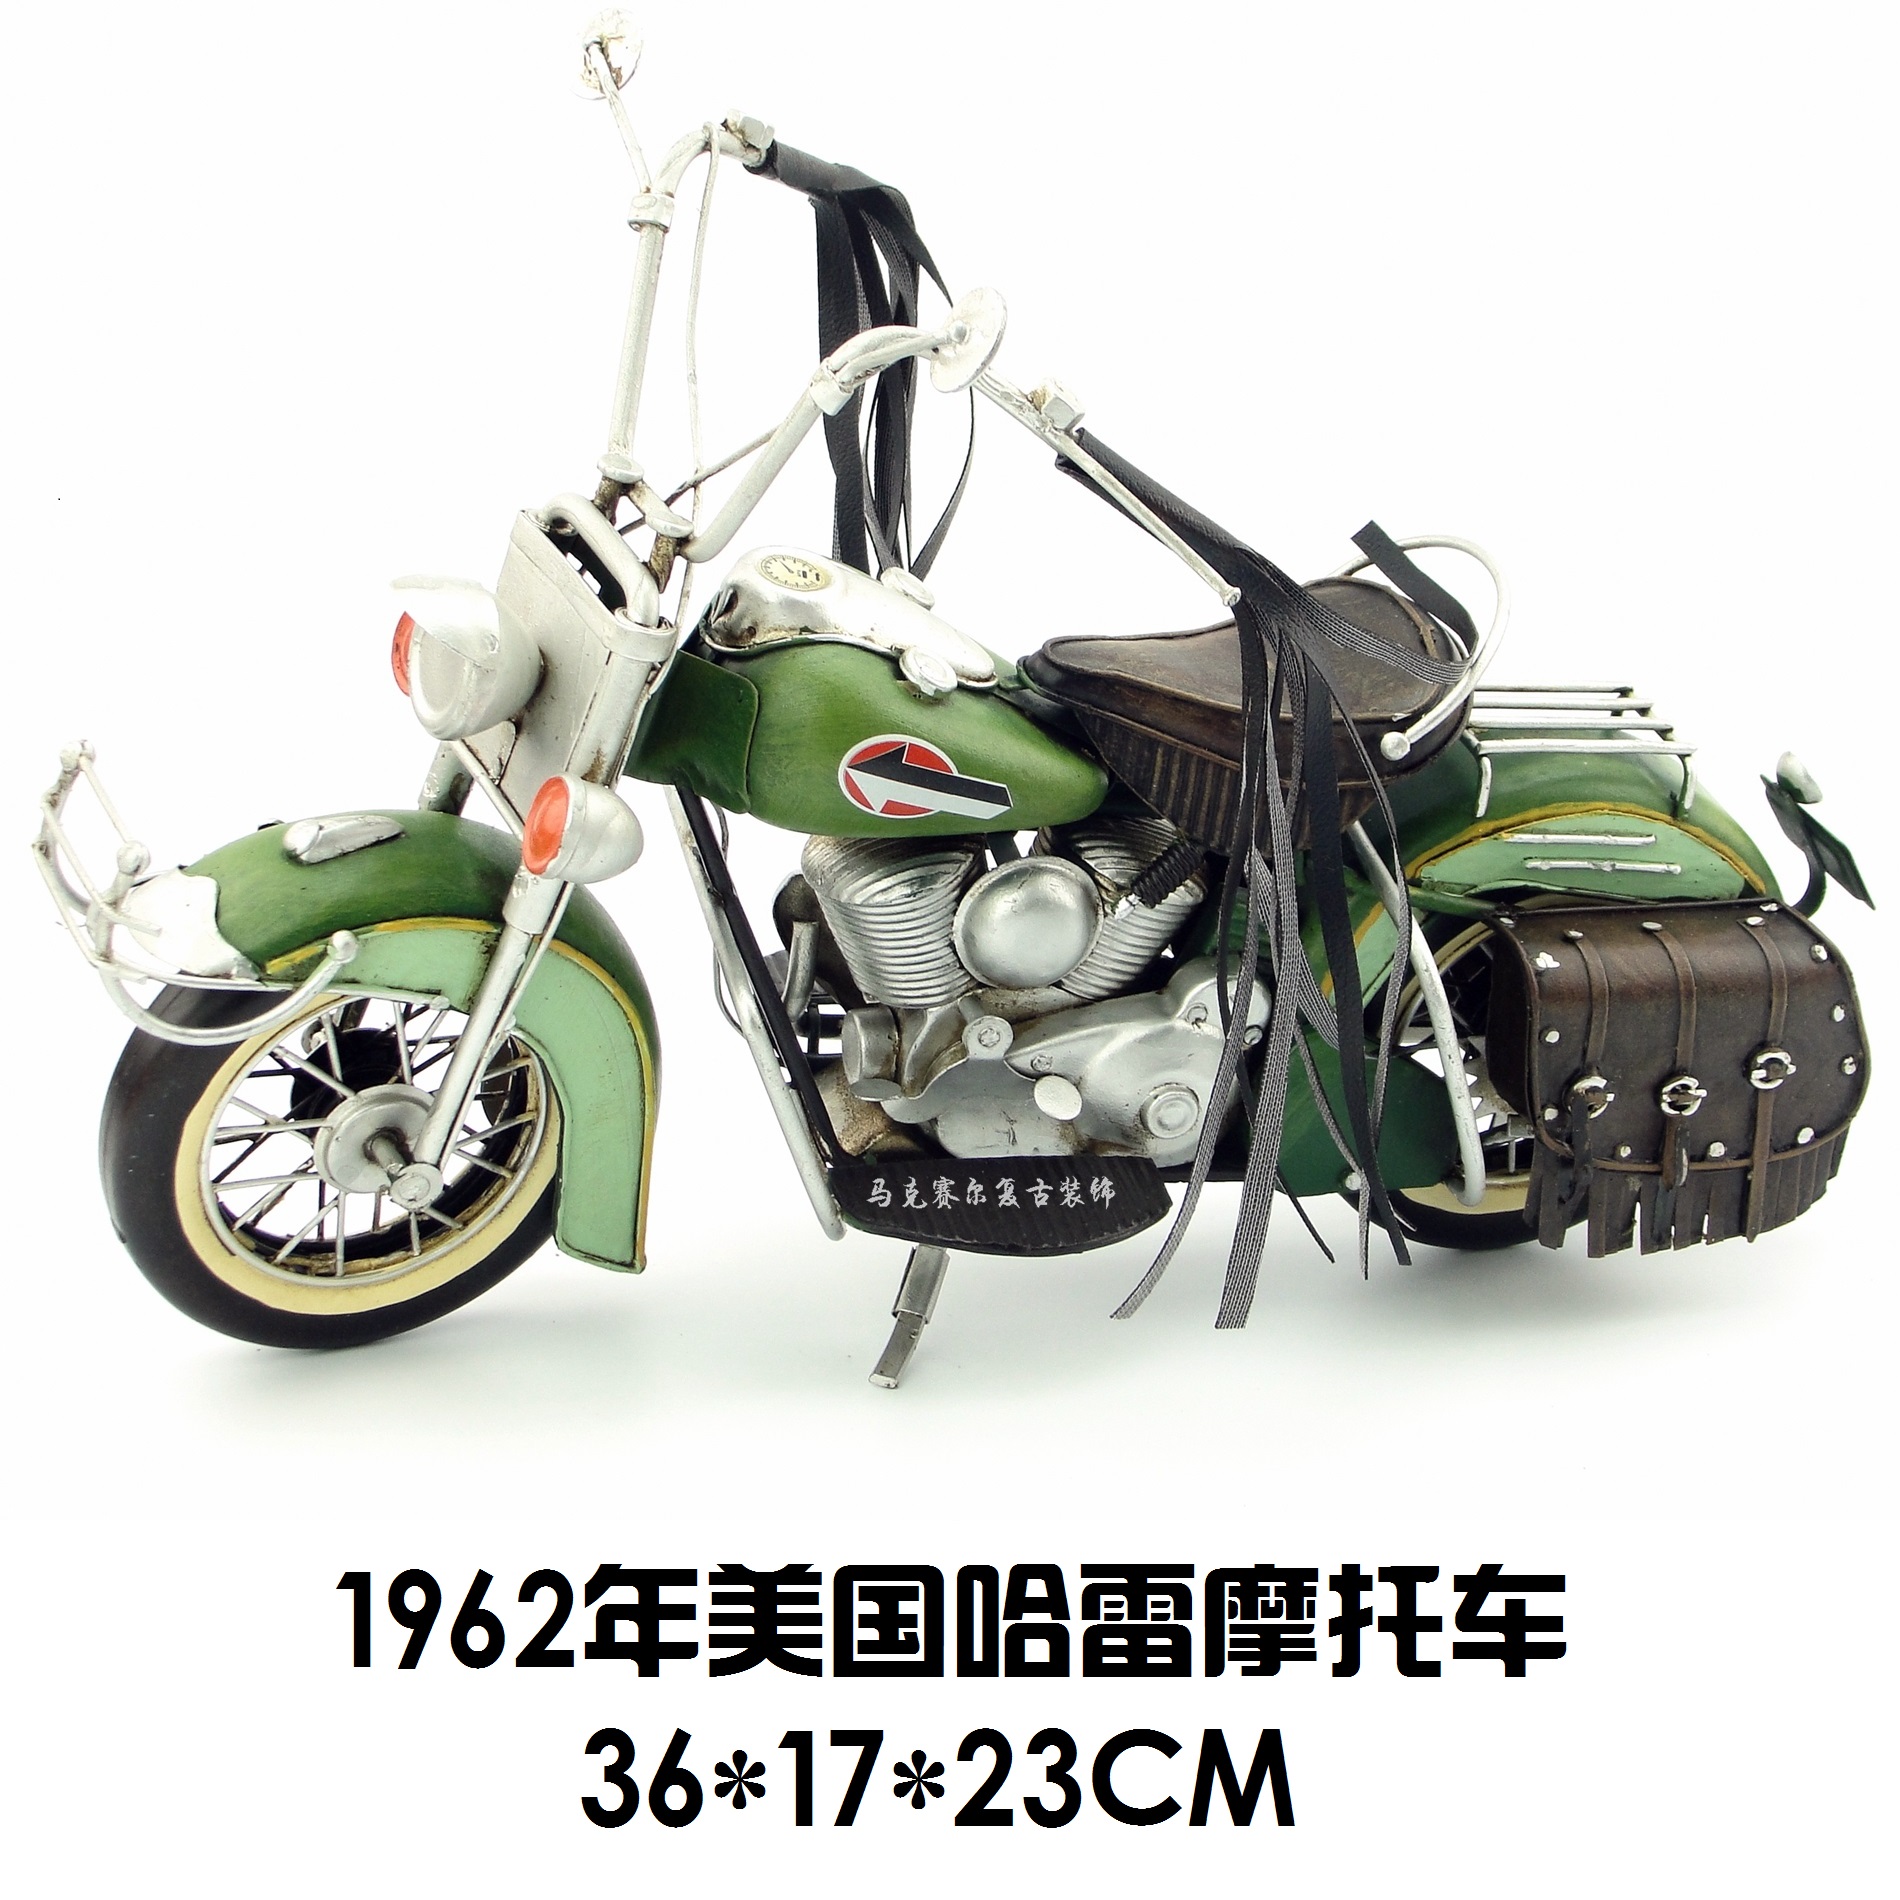 复古铁艺摩托车创意摆件1962年美国机车手工铁皮工艺品装饰品